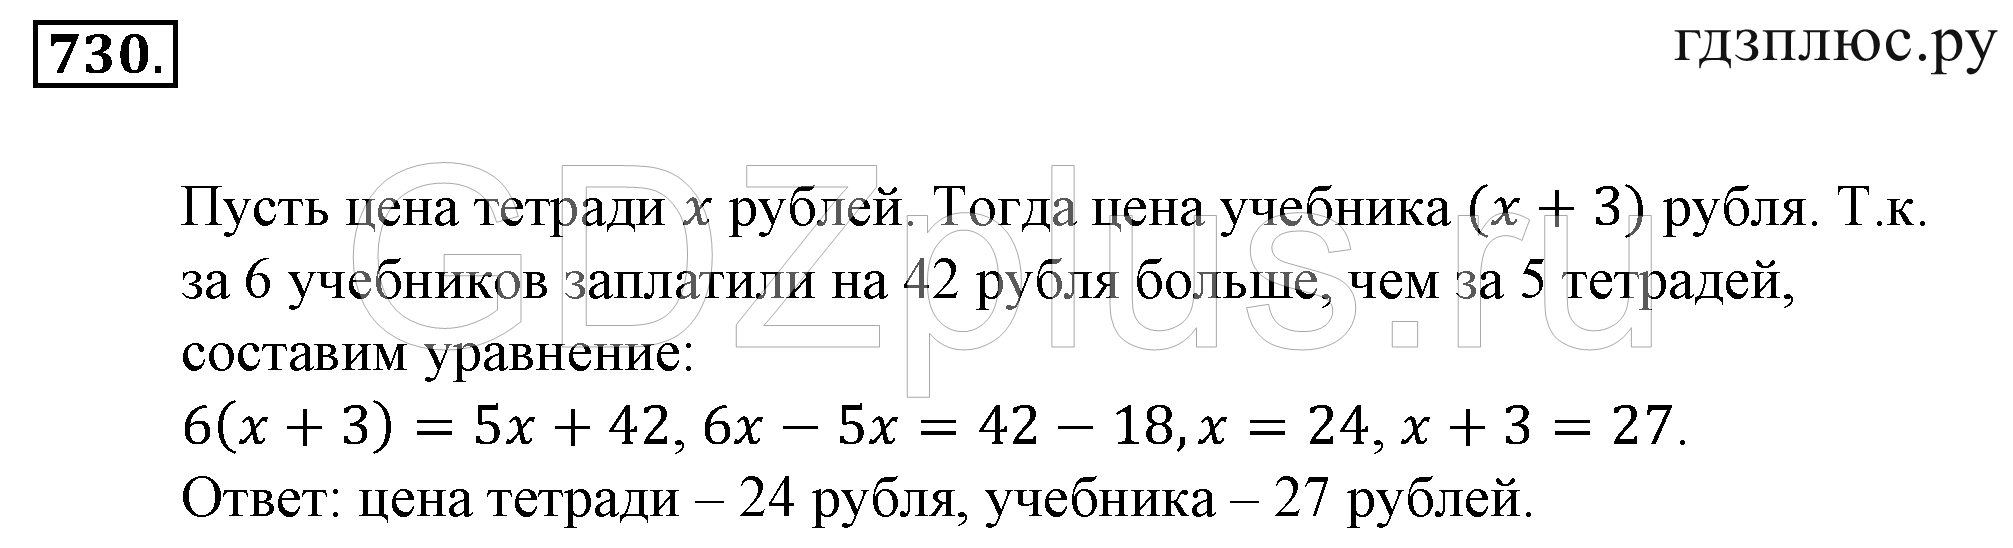 Цена тетради 3 рубля сколько стоят 5. Математика 6 класс номер 730. Математика 6 класс номер 730 гдз. За 6 одинаковых тетрадей заплатили. Гдз математика 5 класс номер 730.